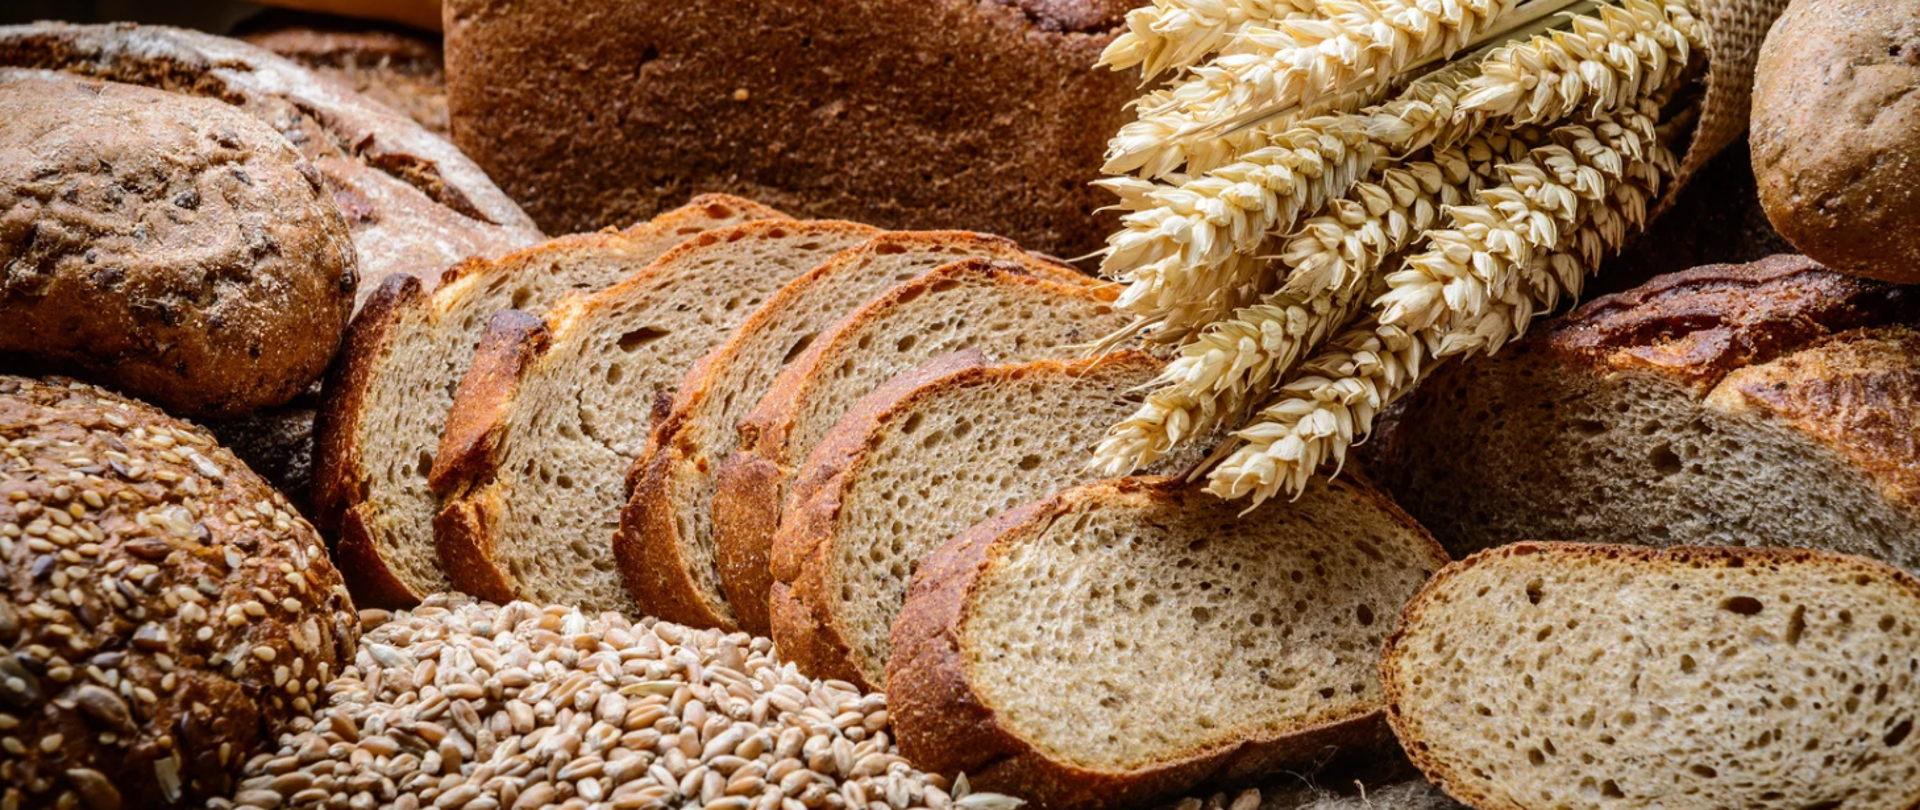 Zdjęcie przedstawiające pokrojony chleb, oraz kłosy zboża